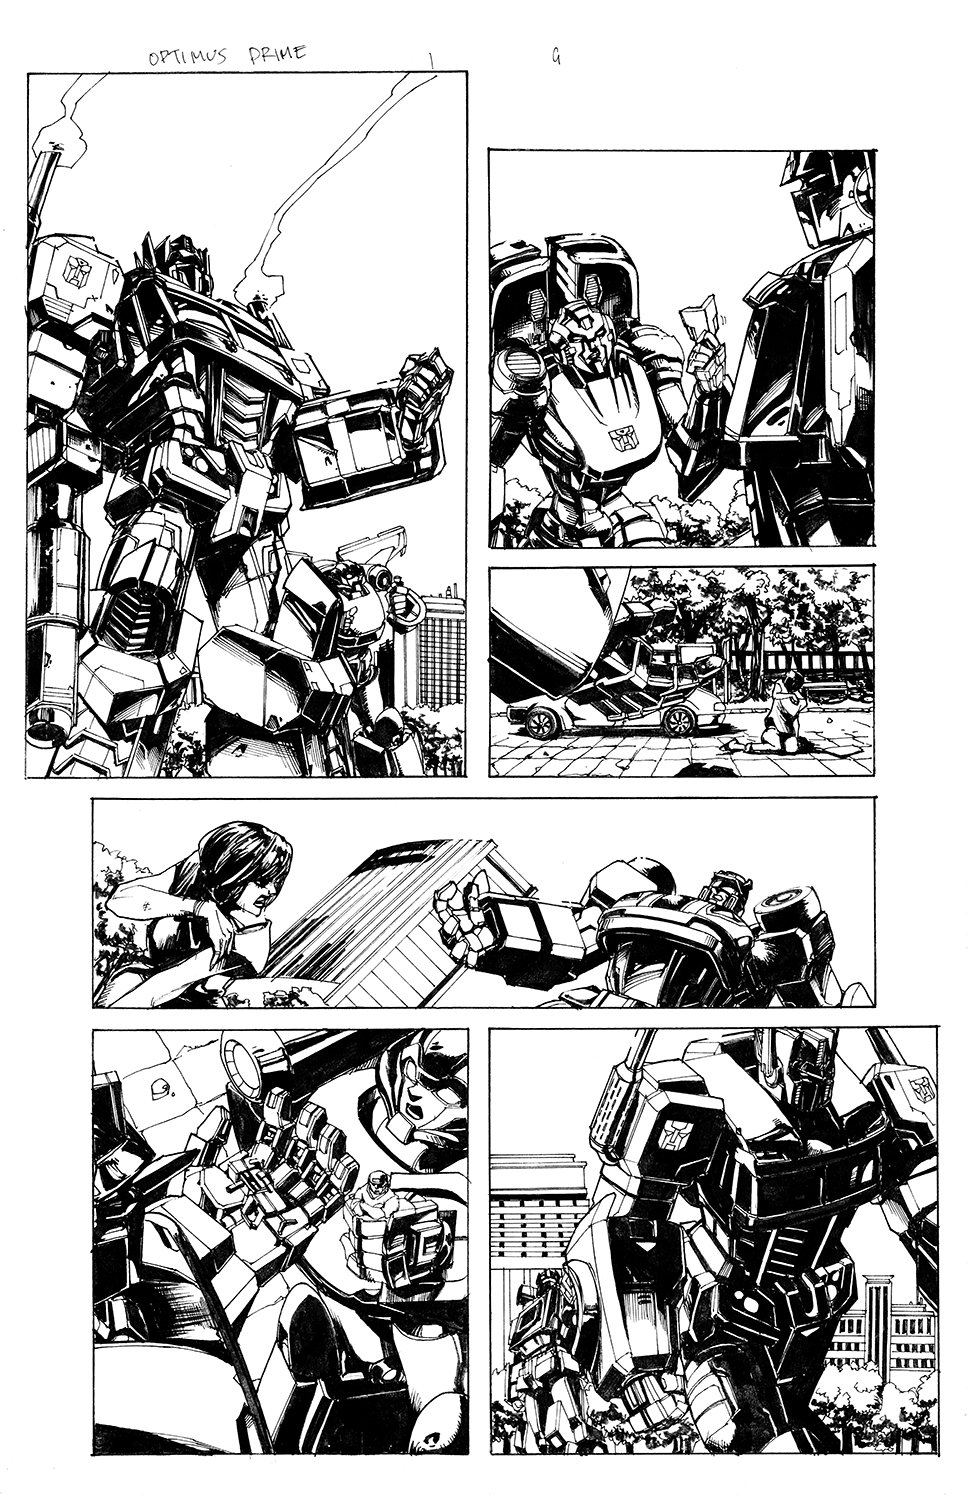 Optimus Prime #1 Page 09